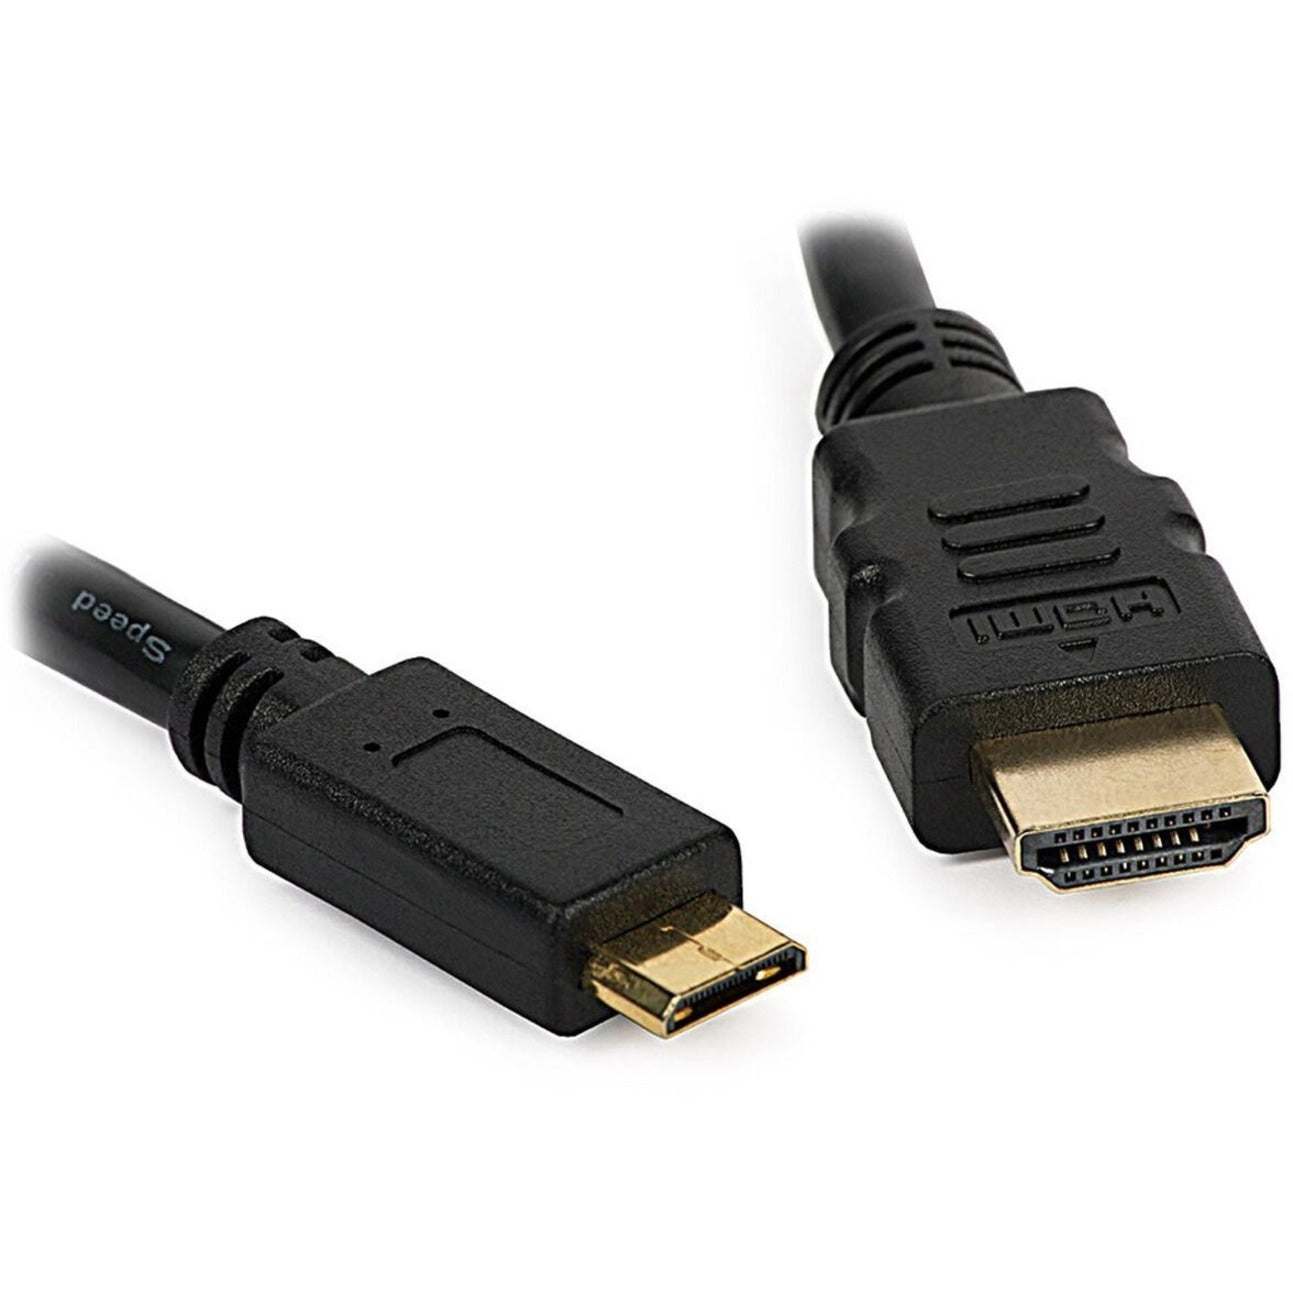 4XEM 4XHDMIMINI6FT 6FT 迷你 HDMI 到 HDMI M/M 适配器电缆 10.2 Gbit/s 数据传输速率 镀金连接器 品牌: 4XEM 品牌翻译: 四合一